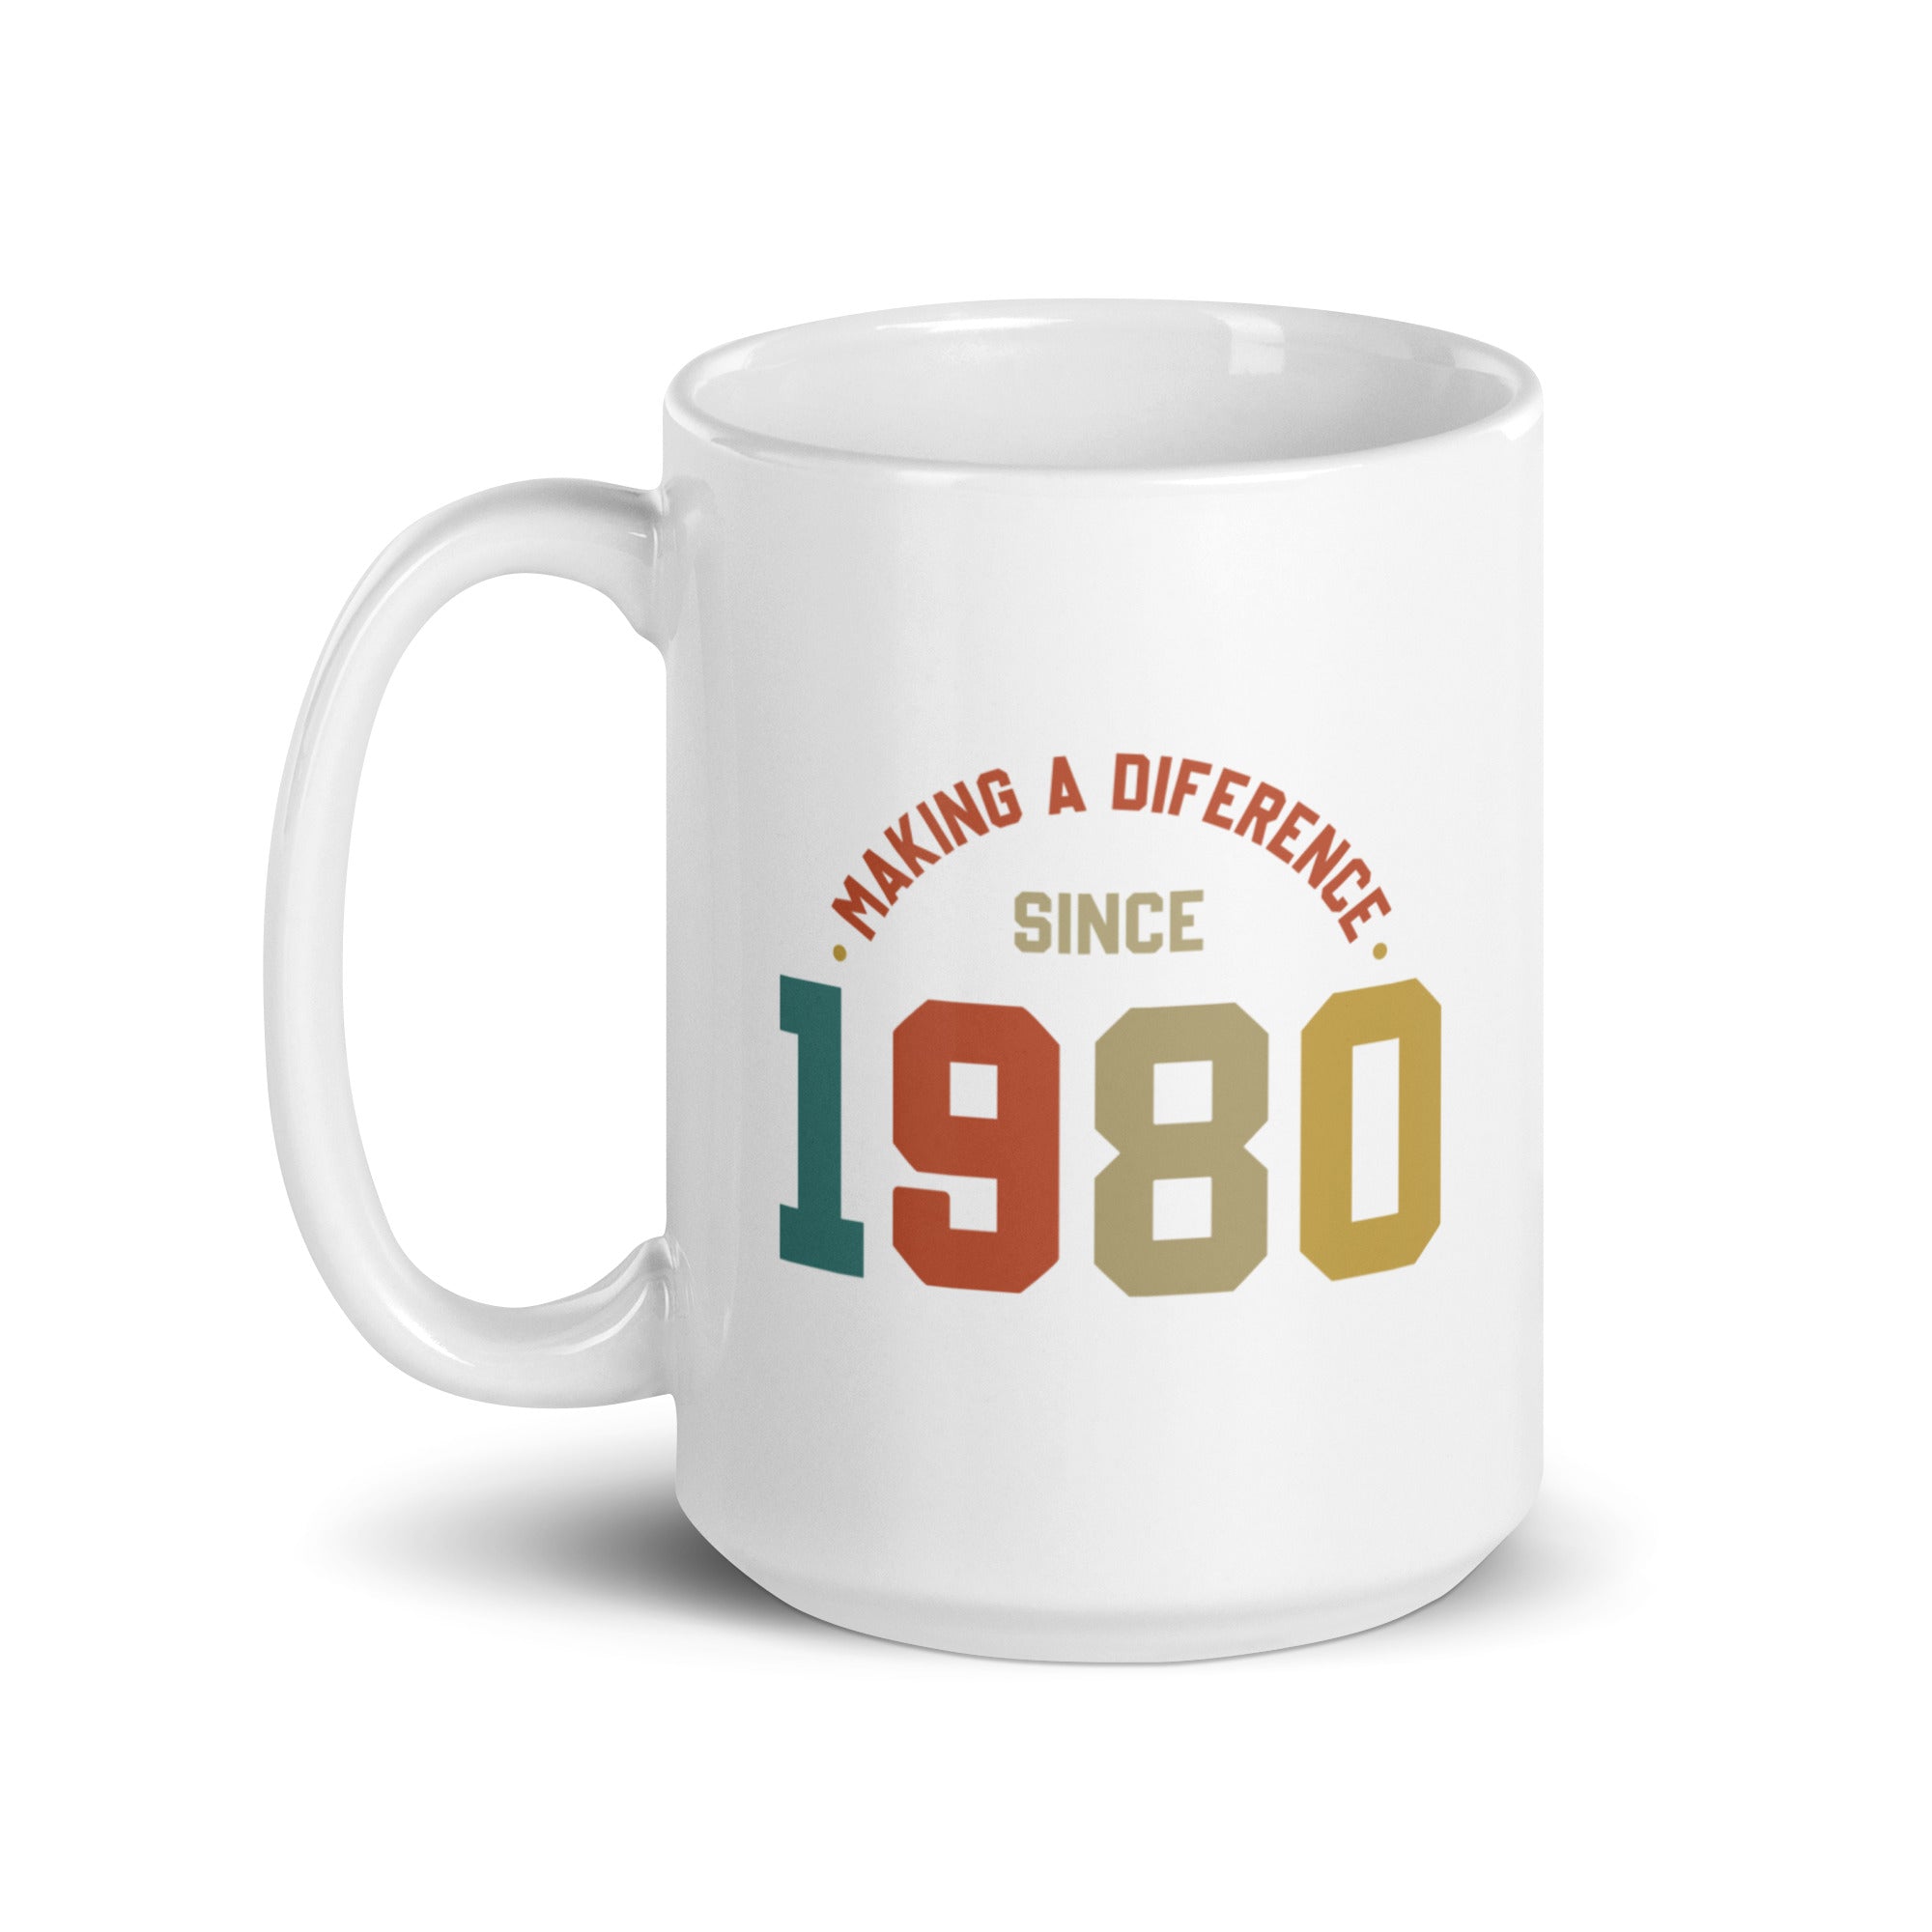 White glossy mug | Making a diference since 1980